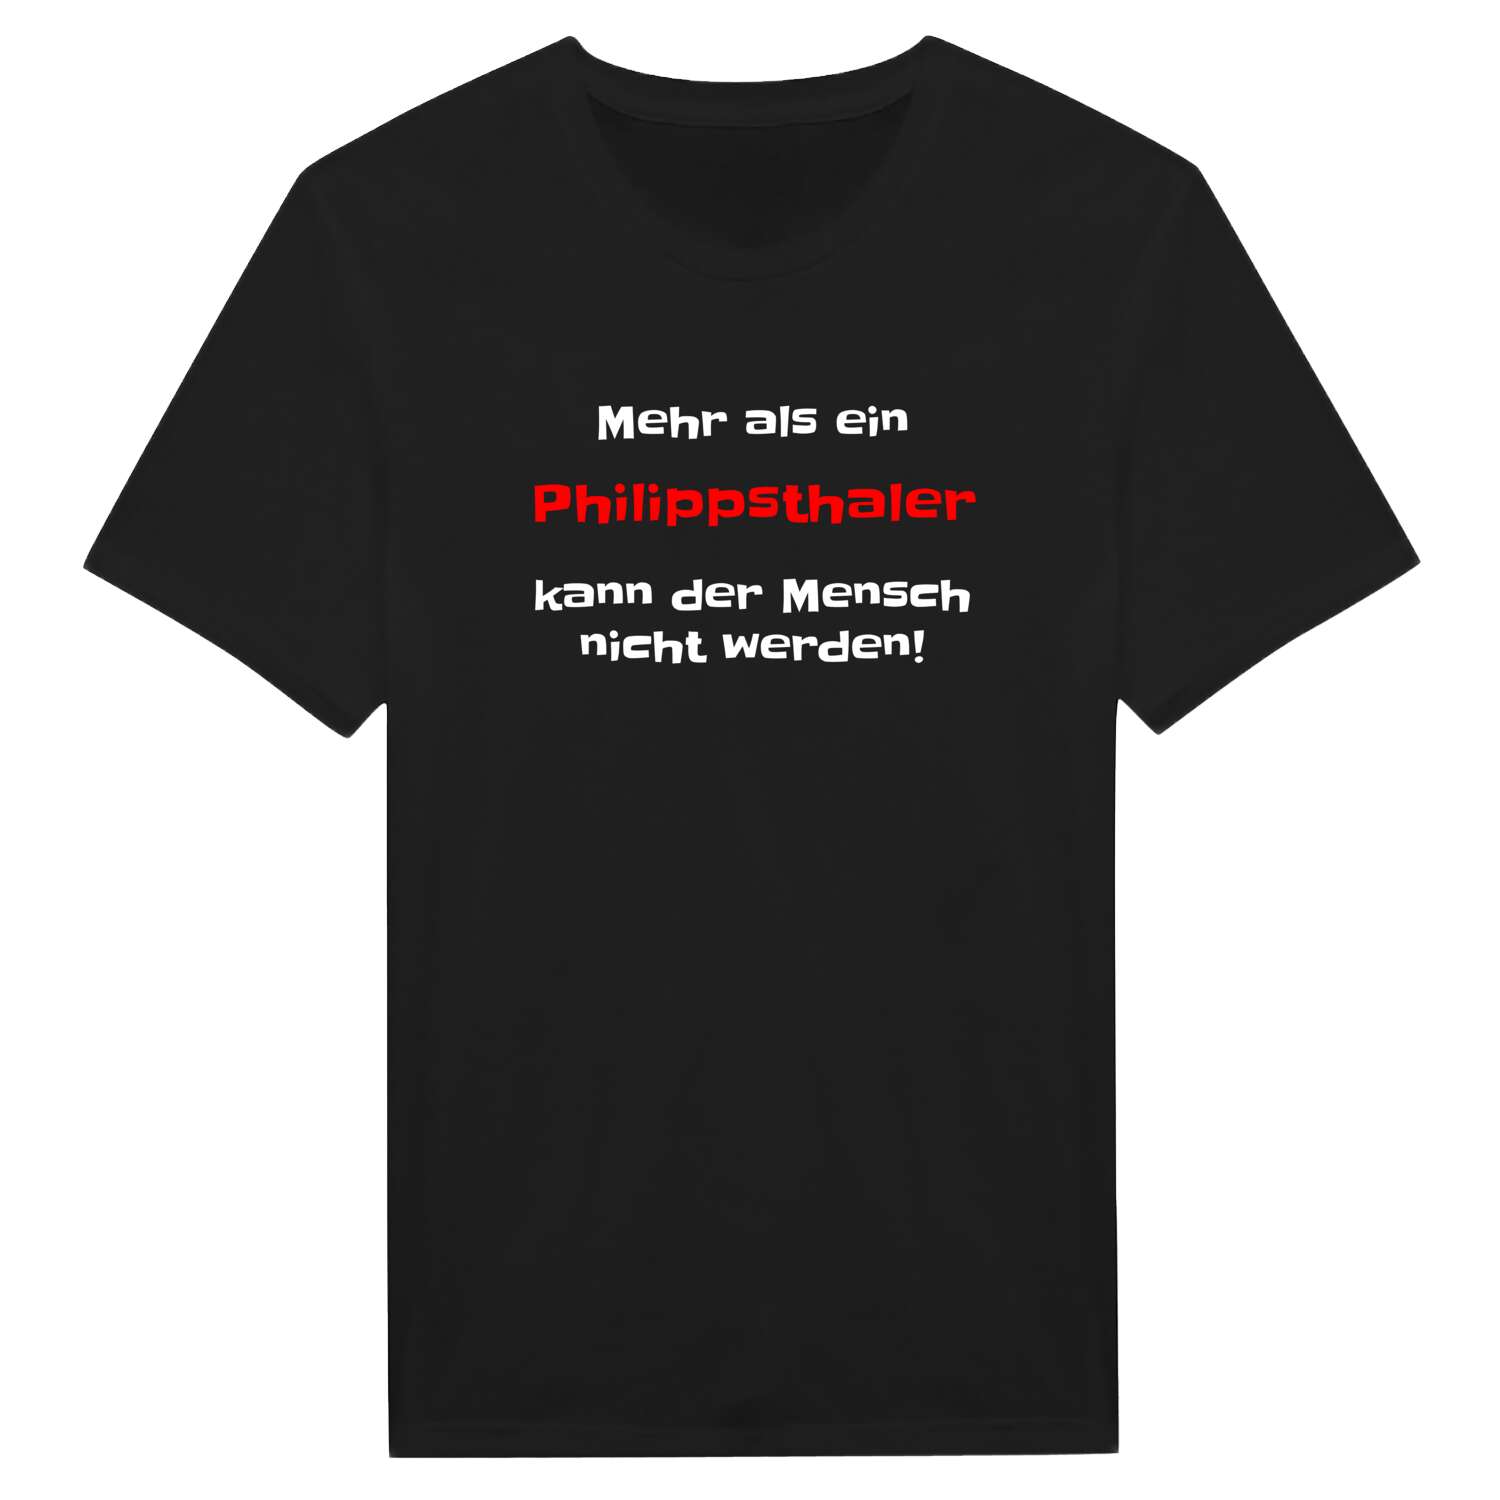 Philippsthal T-Shirt »Mehr als ein«